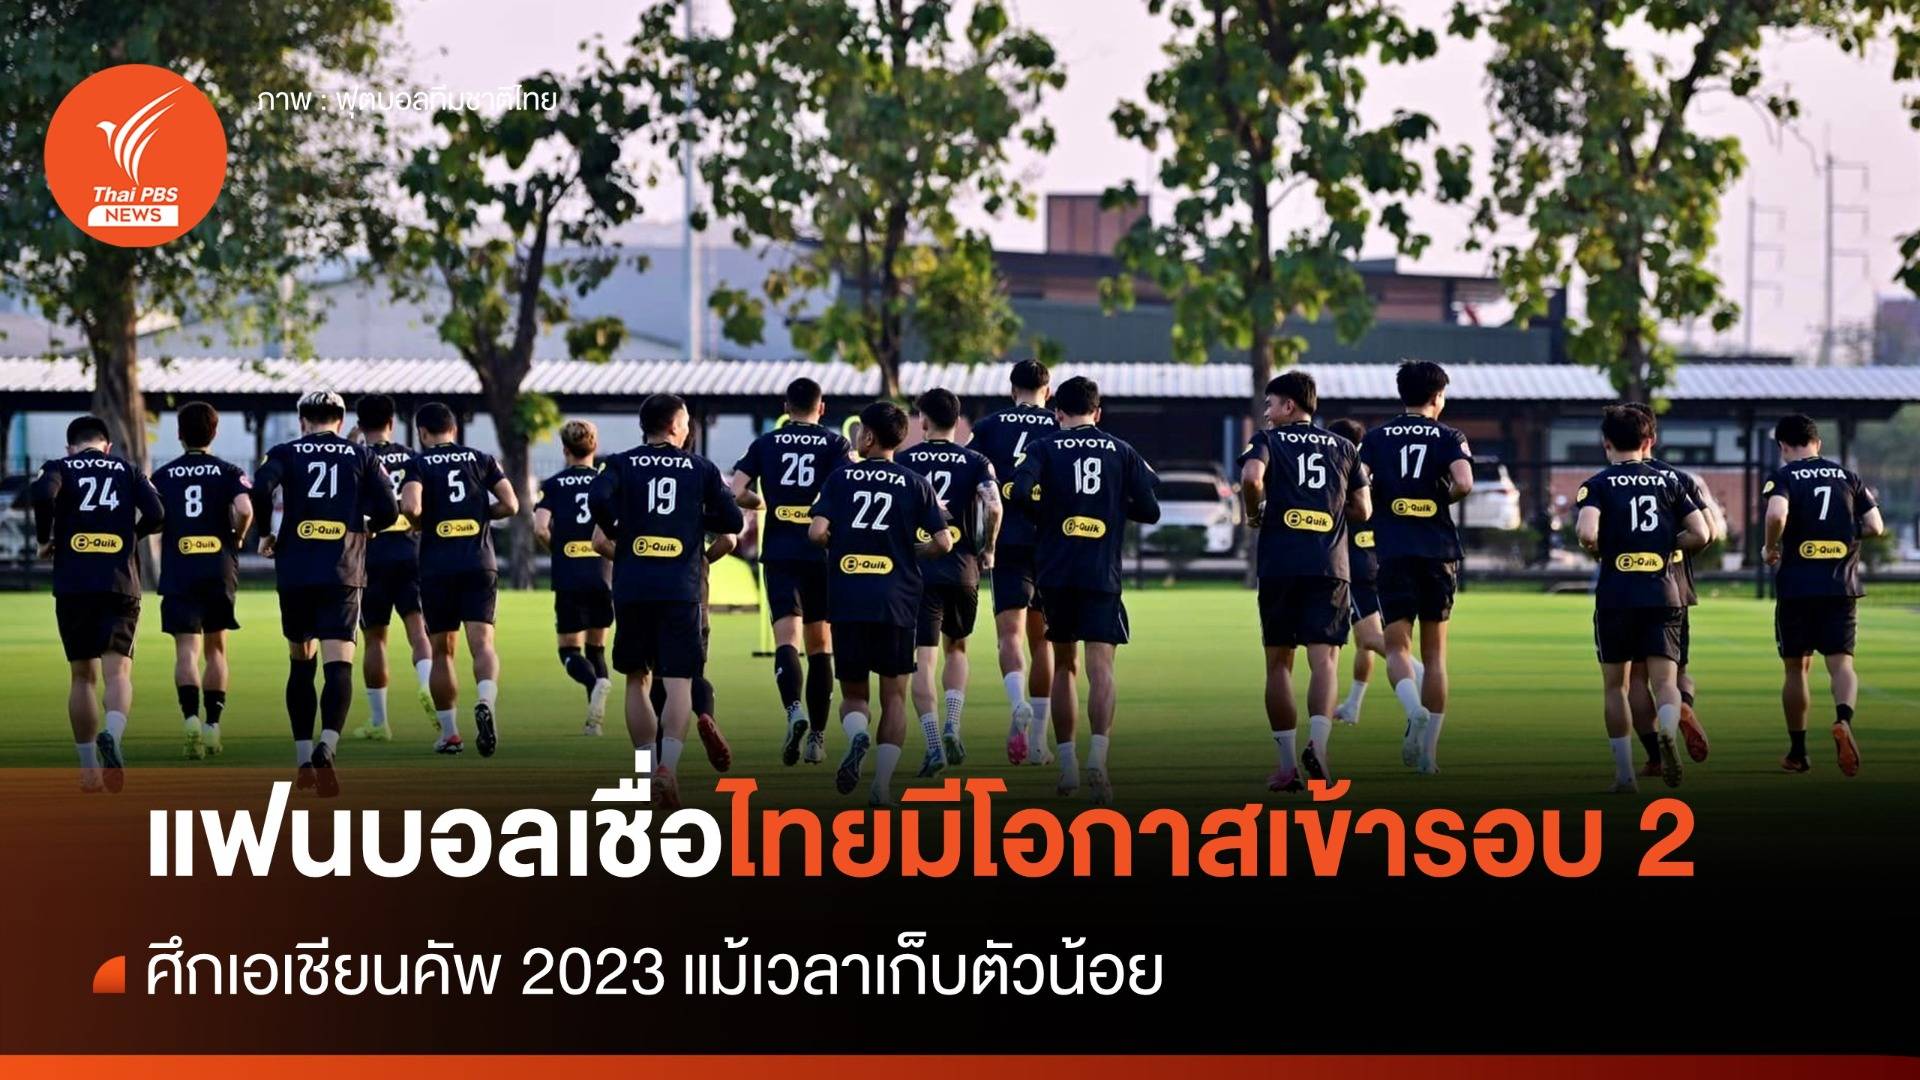 แฟนบอลเชื่อไทยมีโอกาสเข้ารอบ 2 ศึกเอเชียนคัพ